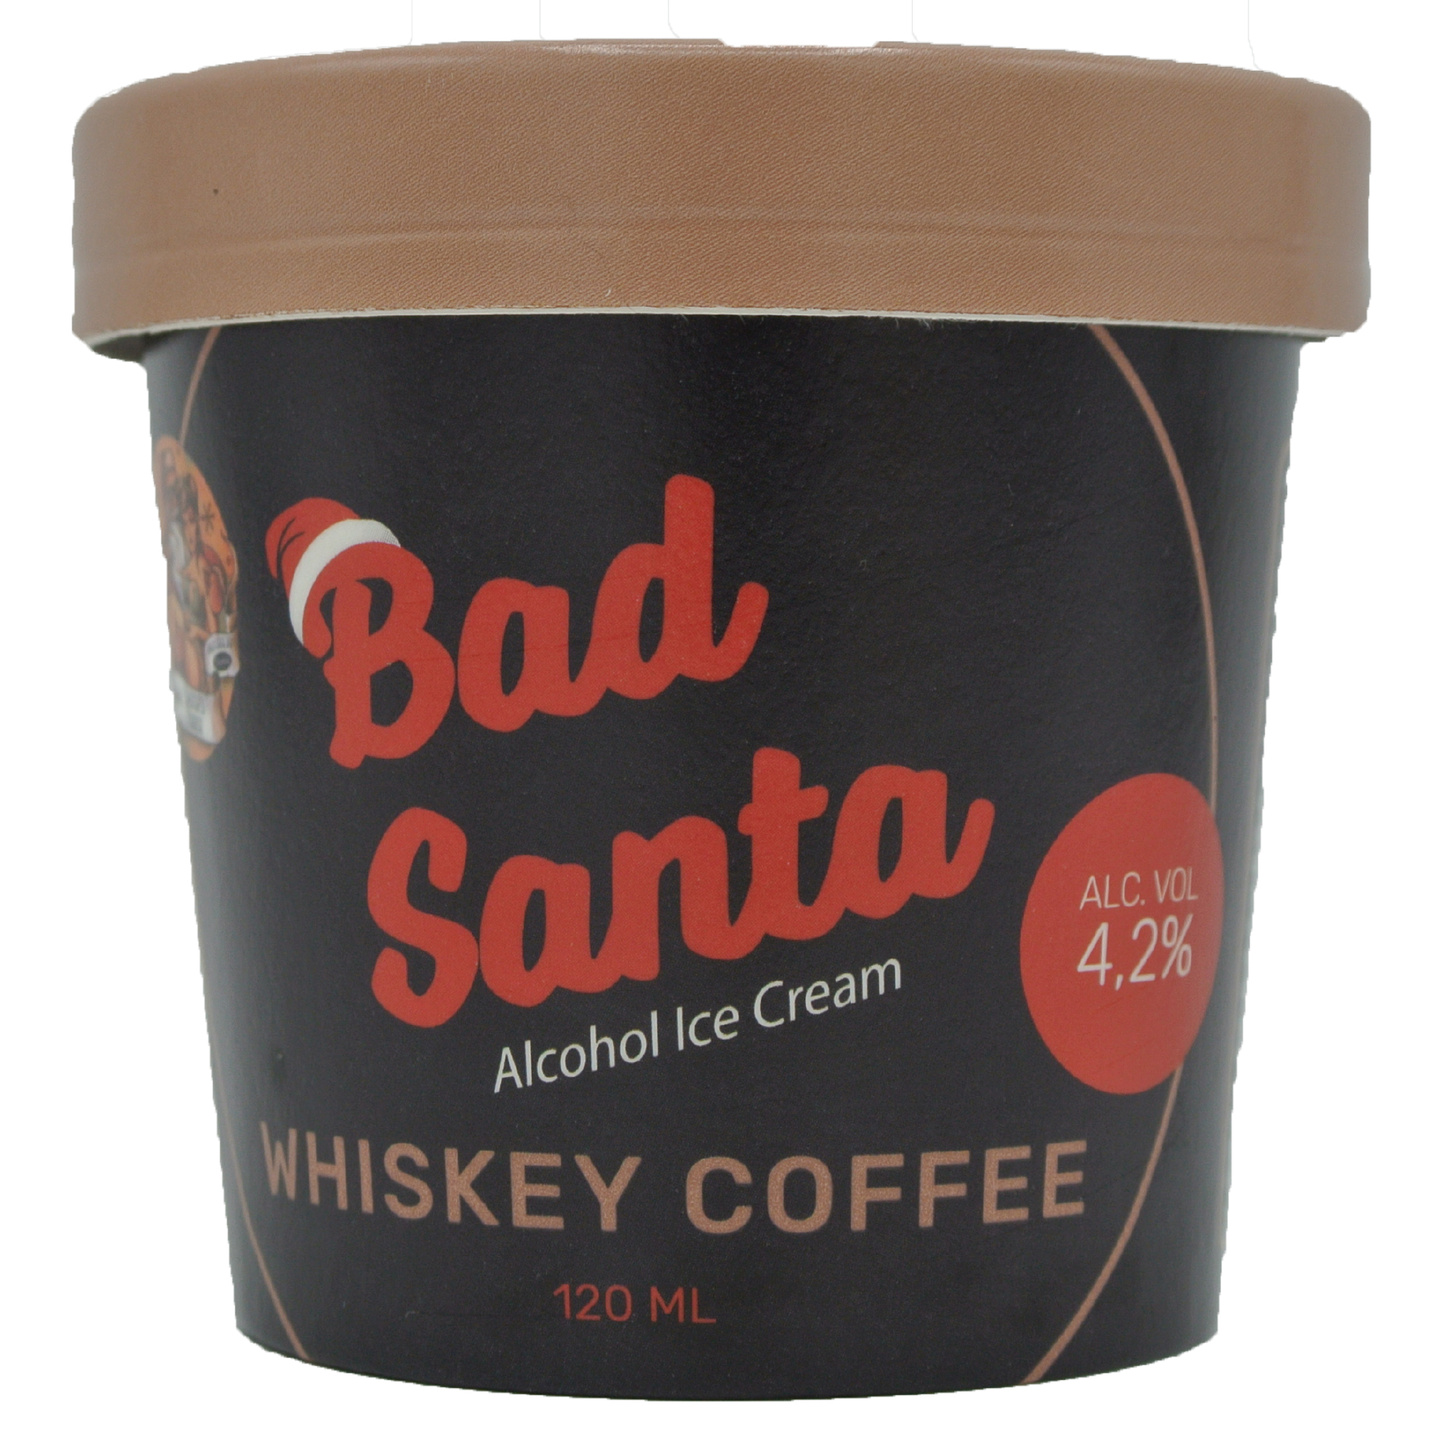 Bad Santa Whisky Coffee alkoholijäätelö 4,2% 120ml